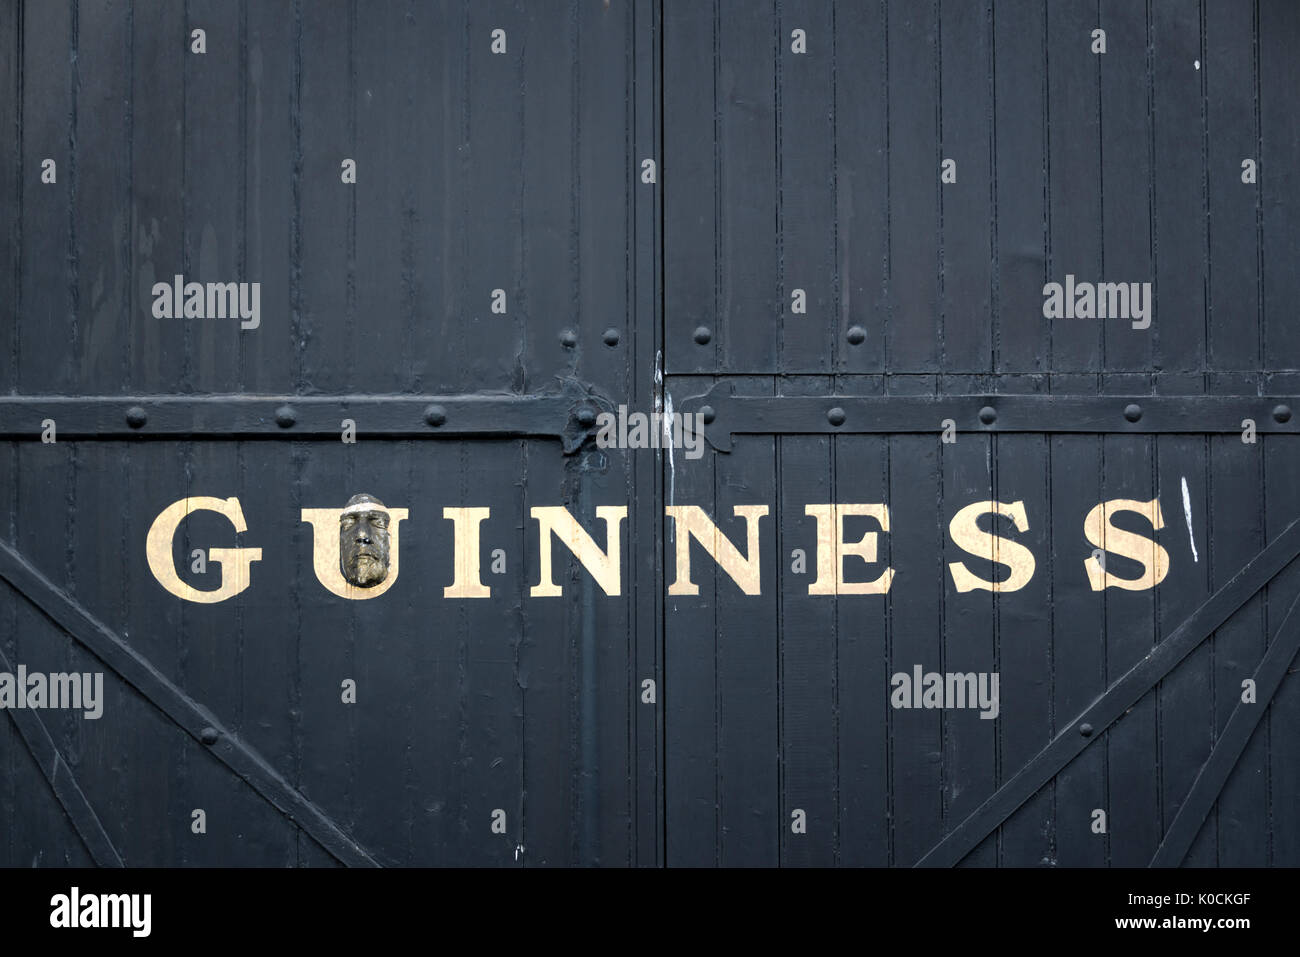 DUBLIN, Irland - 14 August: Tor an das Guinness Storehouse Brauerei. Das Guinness Storehouse ist eine beliebte Touristenattraktion in Dublin Stockfoto